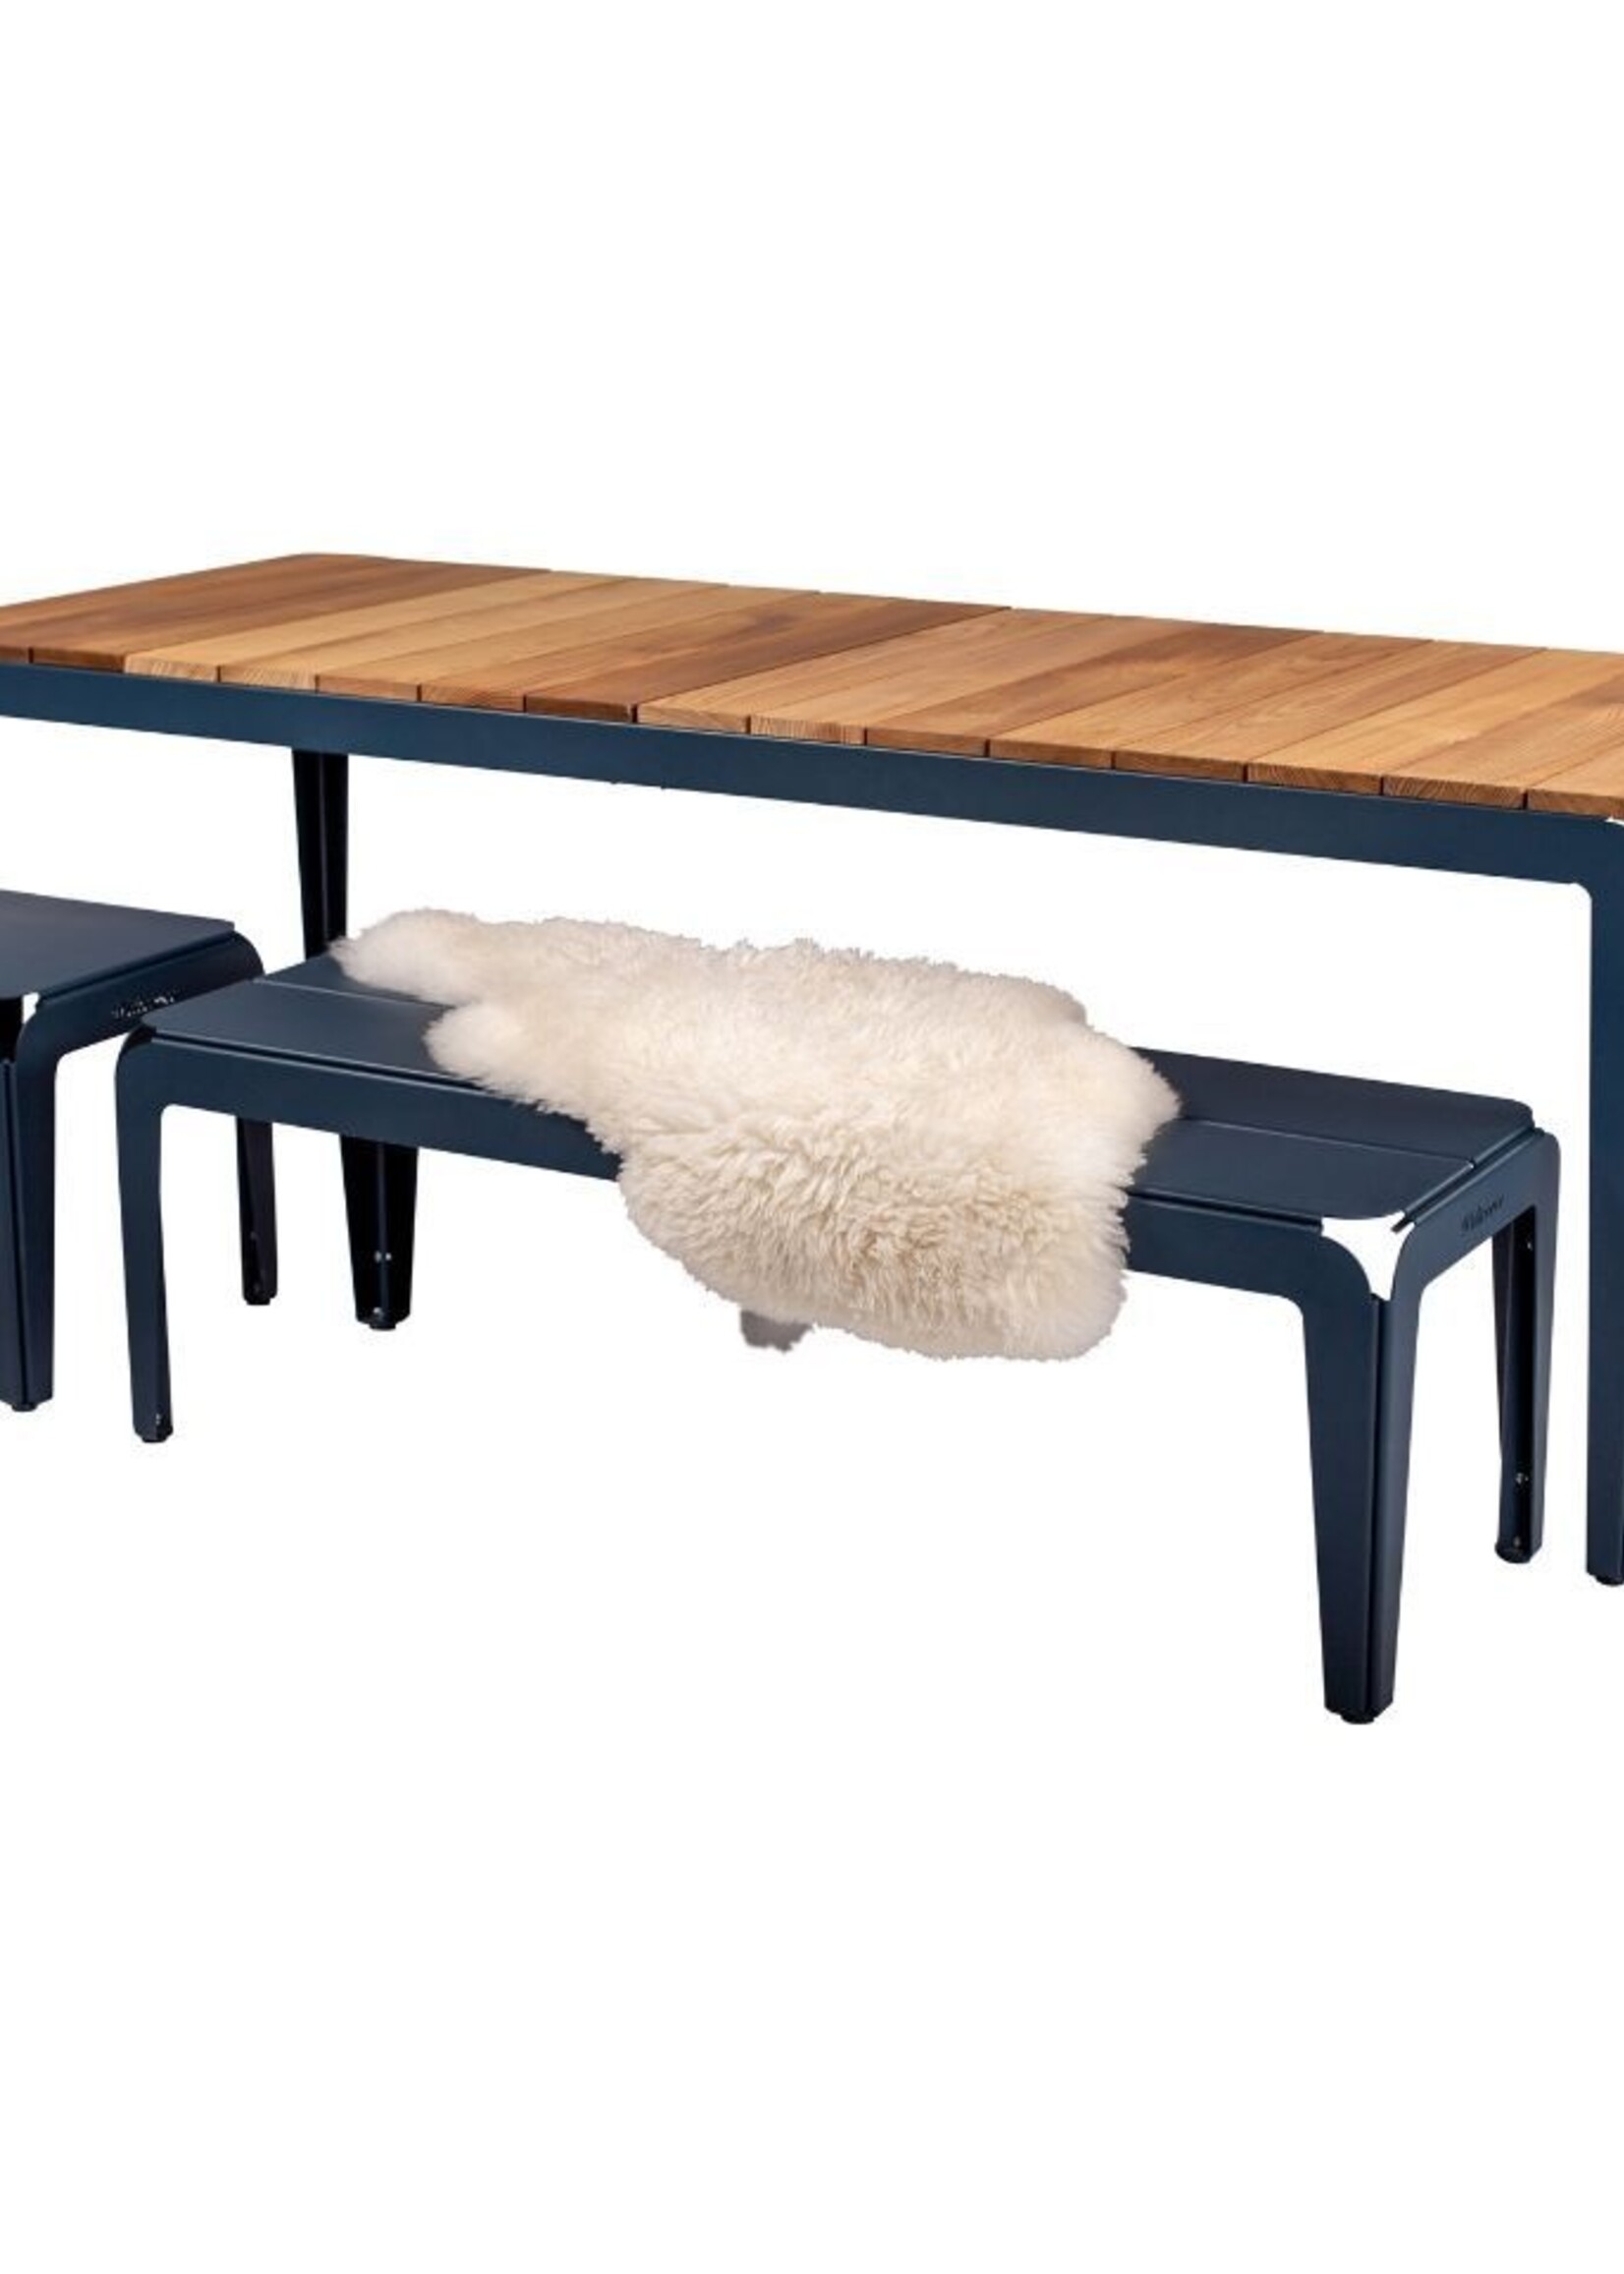 Weltevree Weltevree - Bended Table Wood 220 - Stalen Tuintafel met houten blad - Grey Blue